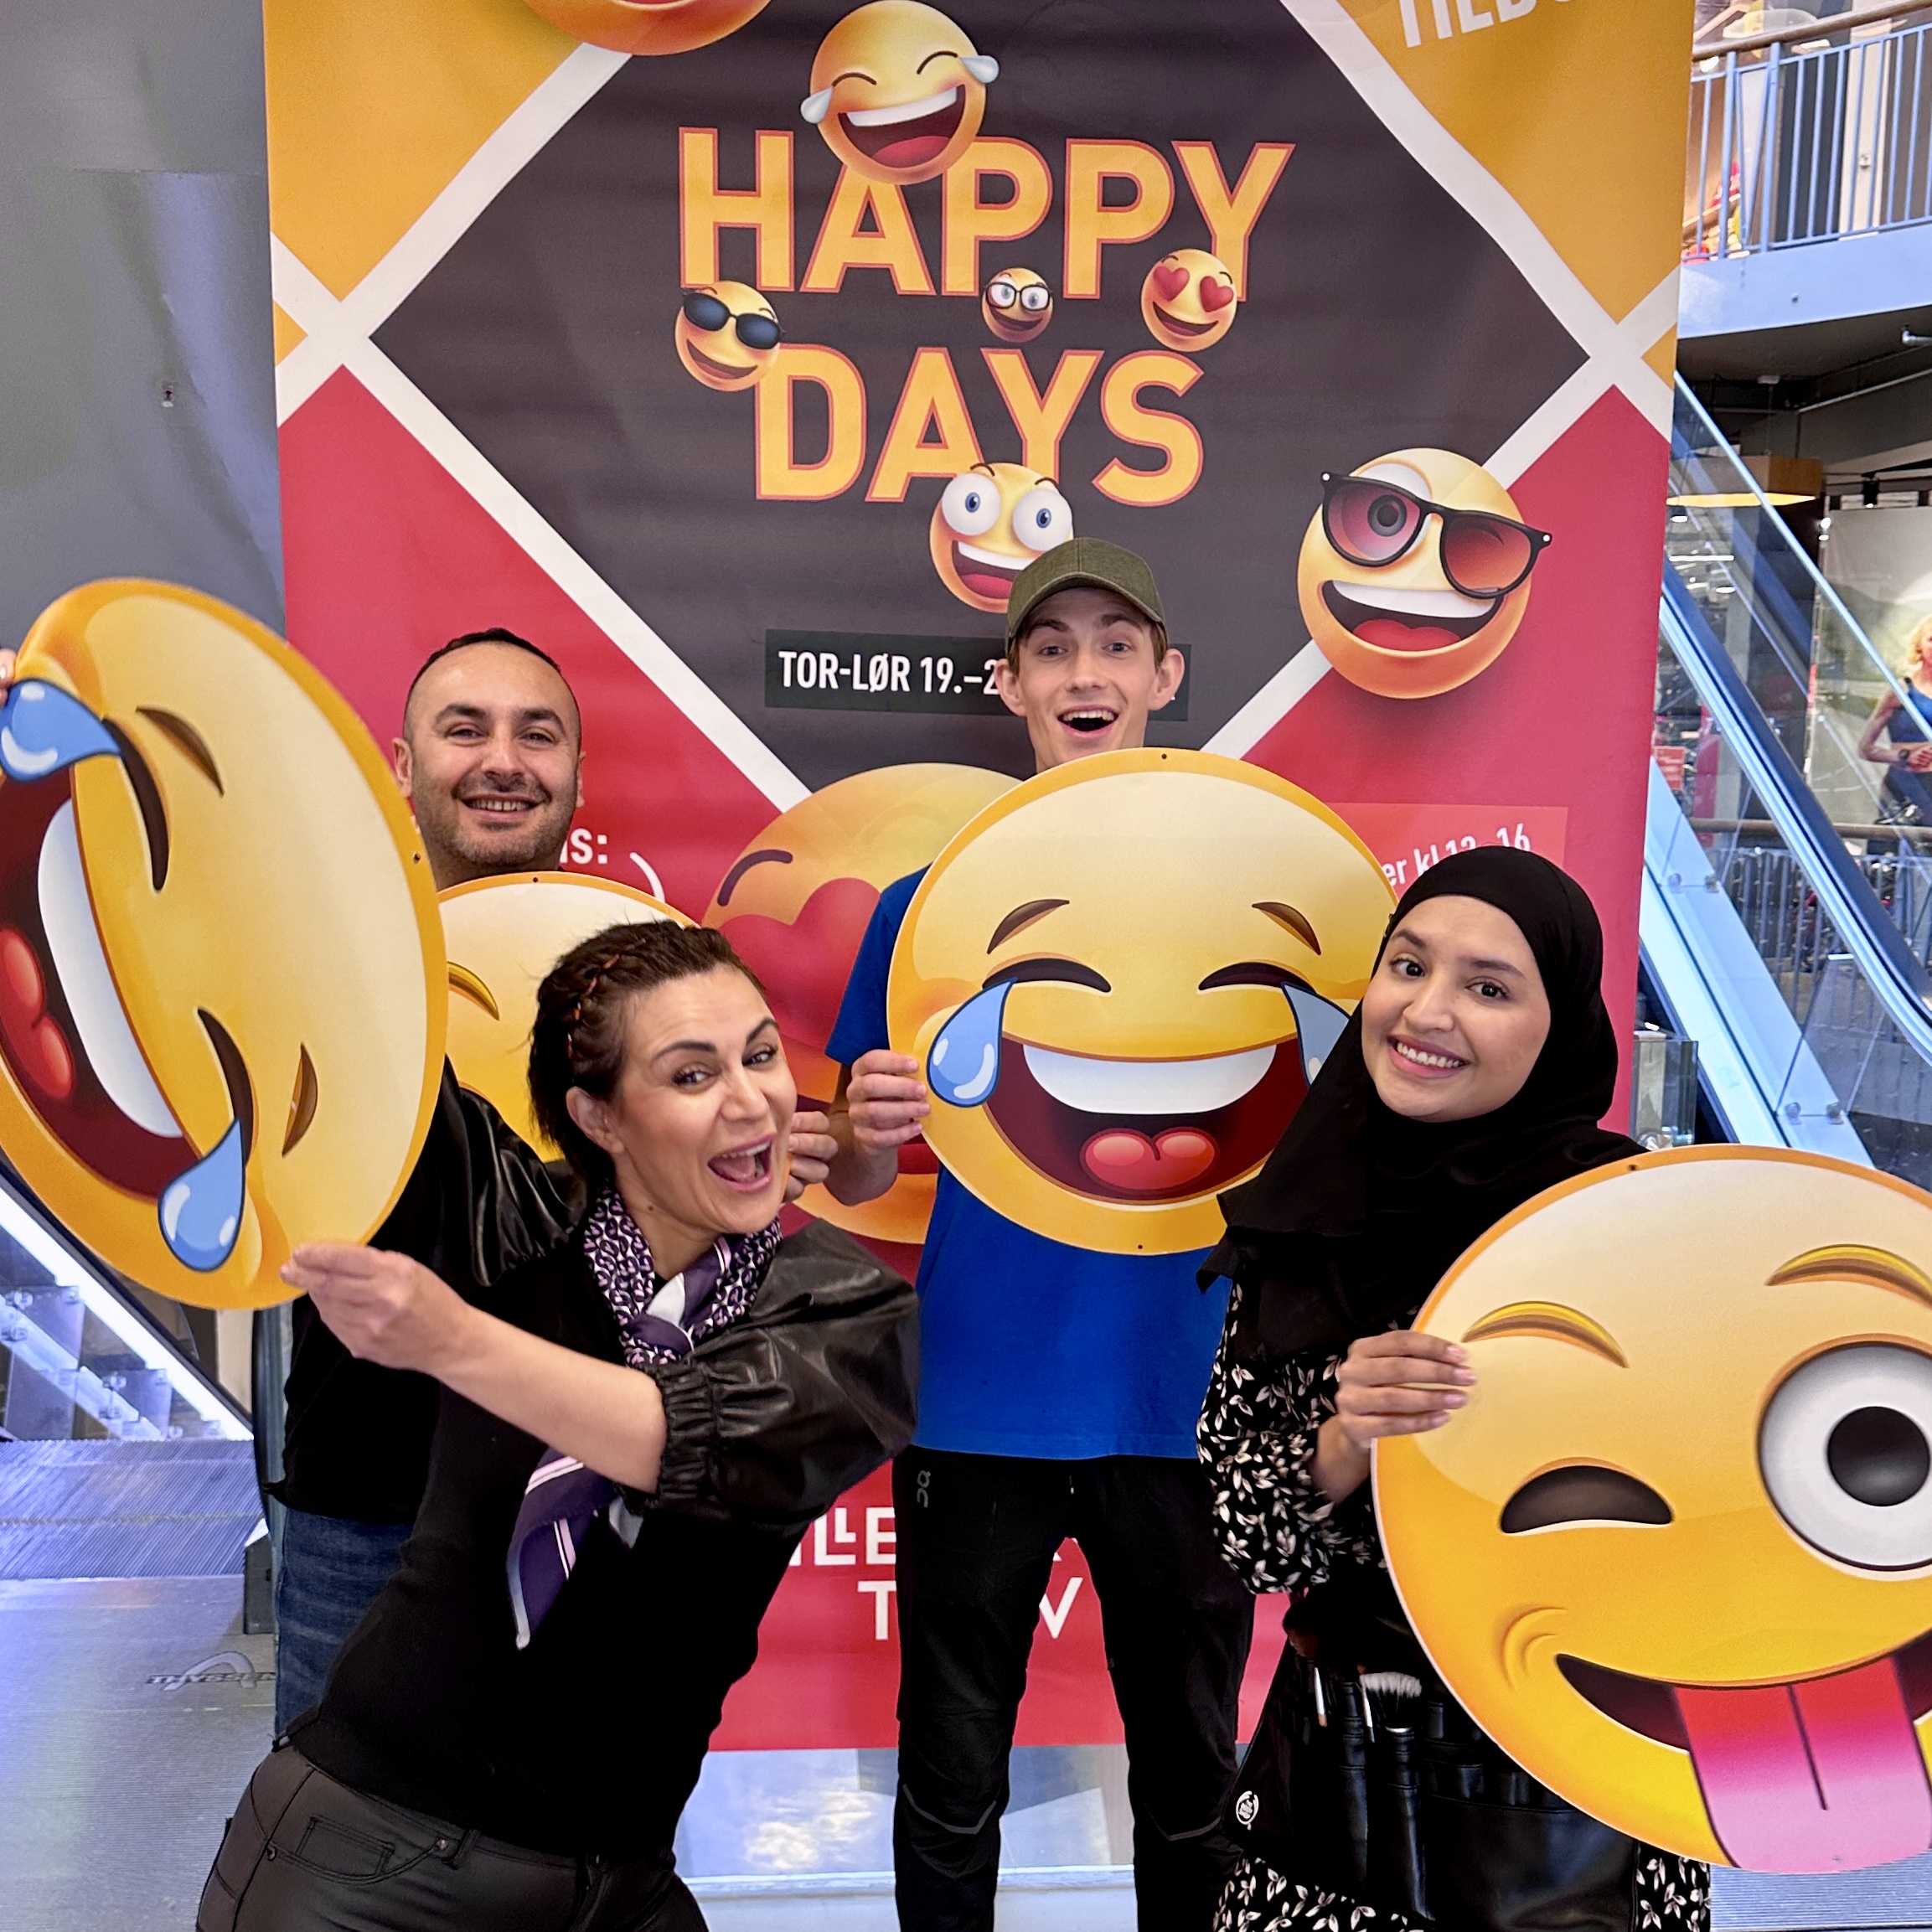 Happy Days med blide fjes og glade tilbud! 4 butikkansatte med hver sin smilefjesplakat foran stort Happy Days plakat